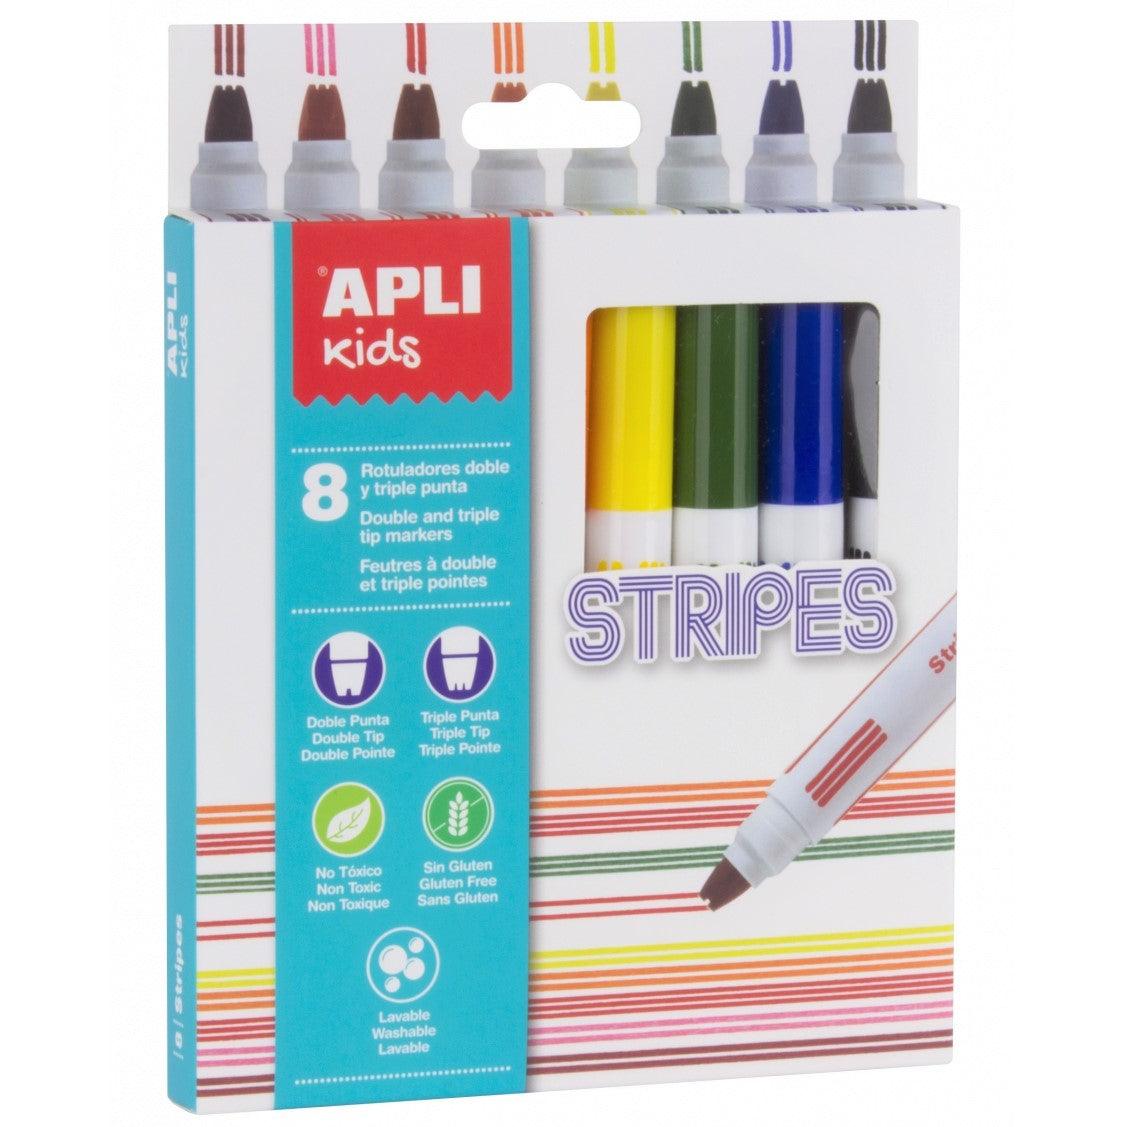 Apli Kids: flamastry kreskowe Stripes 8 kolorów - Noski Noski